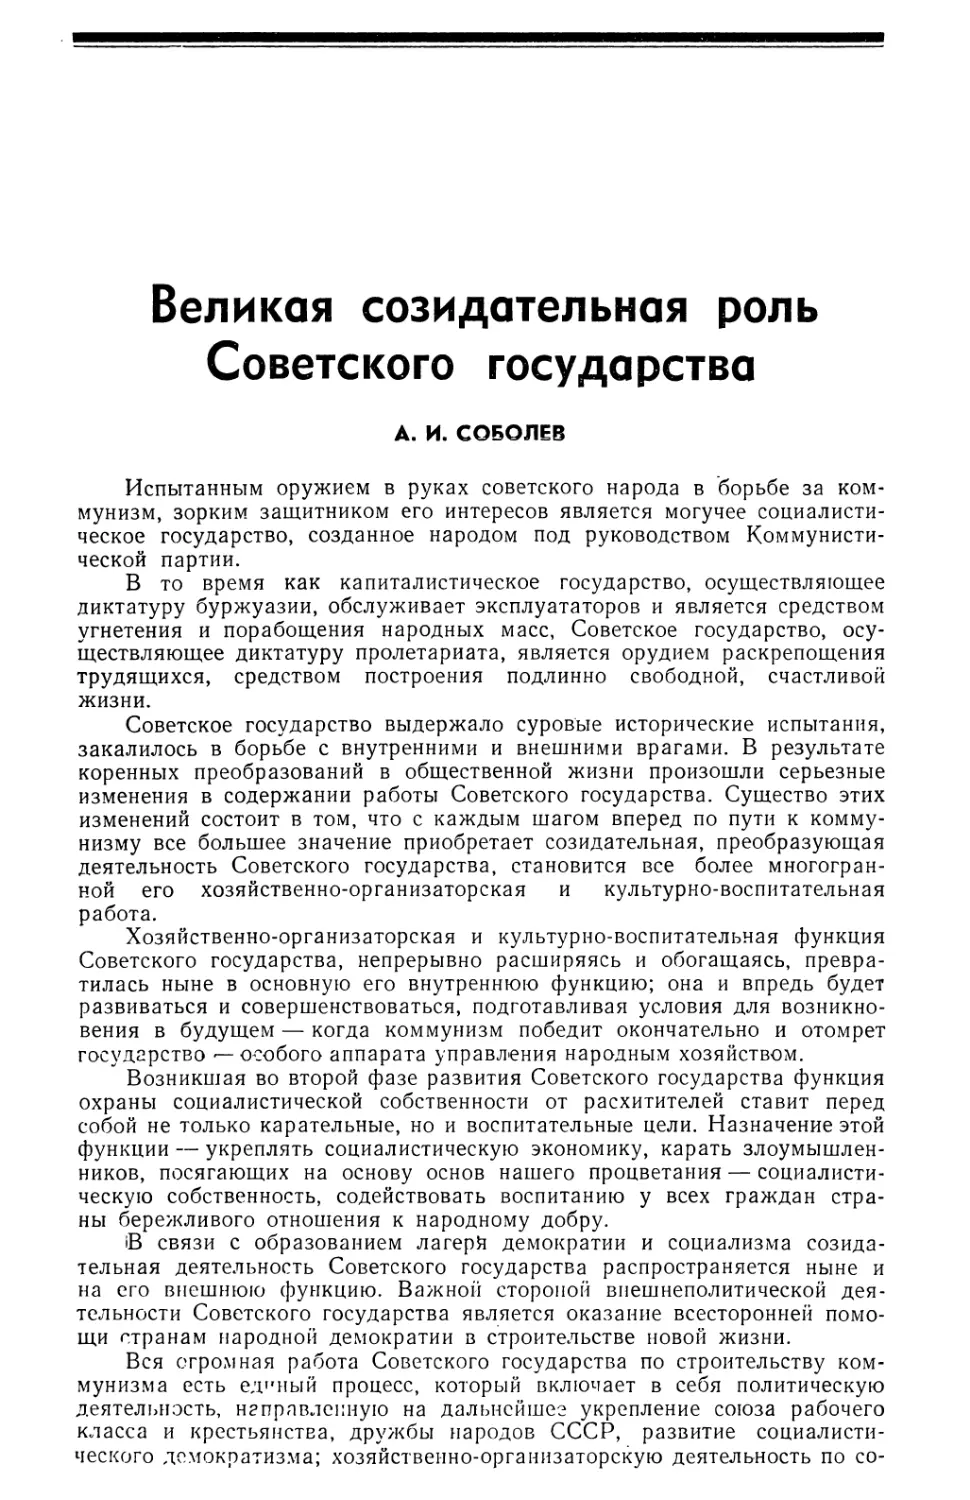 А. И. Соболев — Великам созидательная роль Советского государства